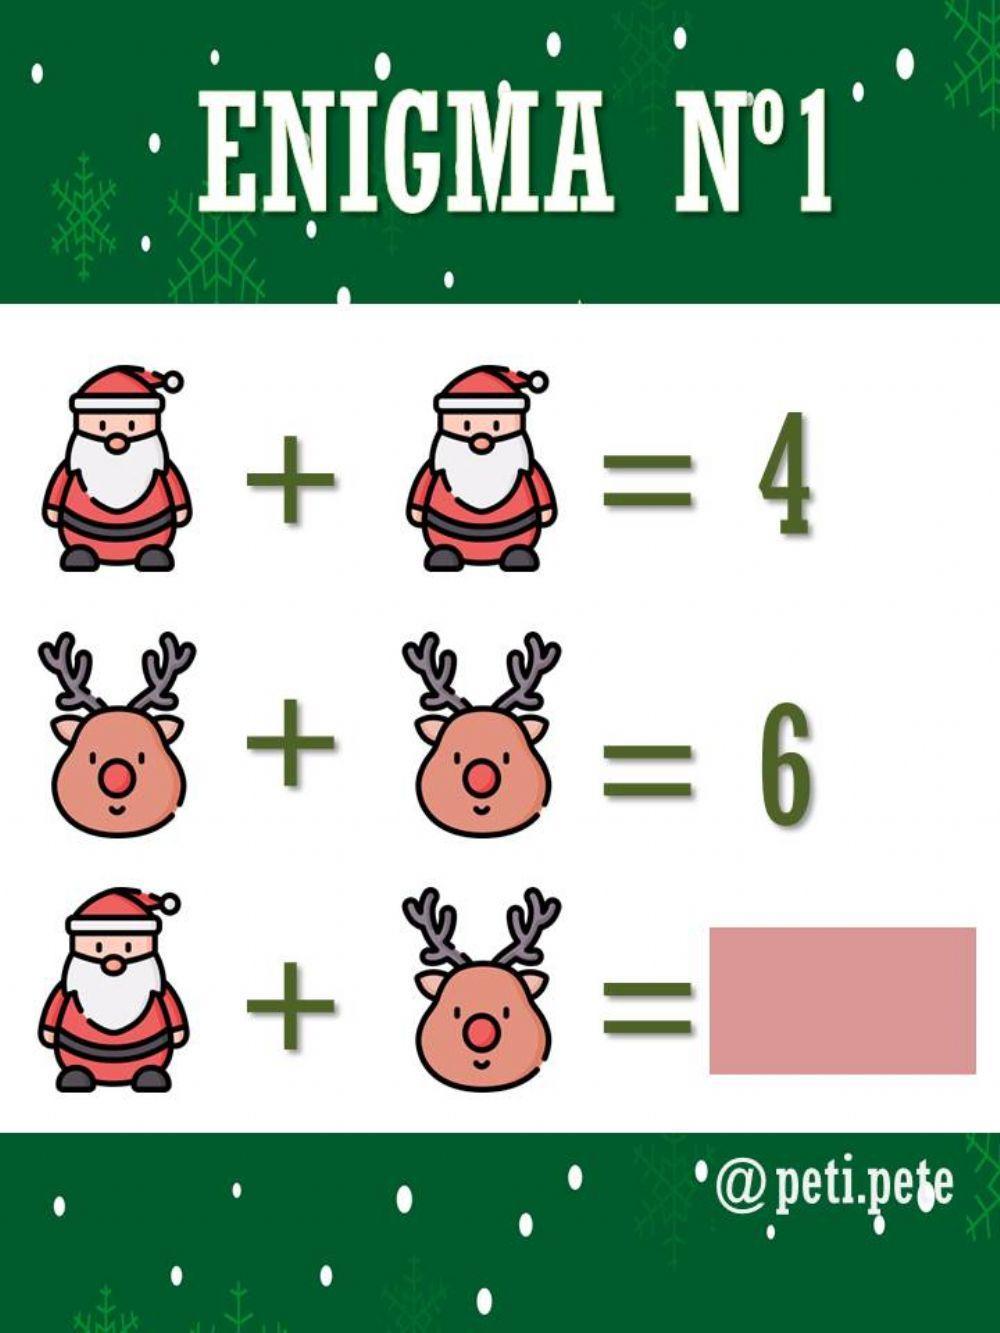 Enigma 1 (enigmas navideños)